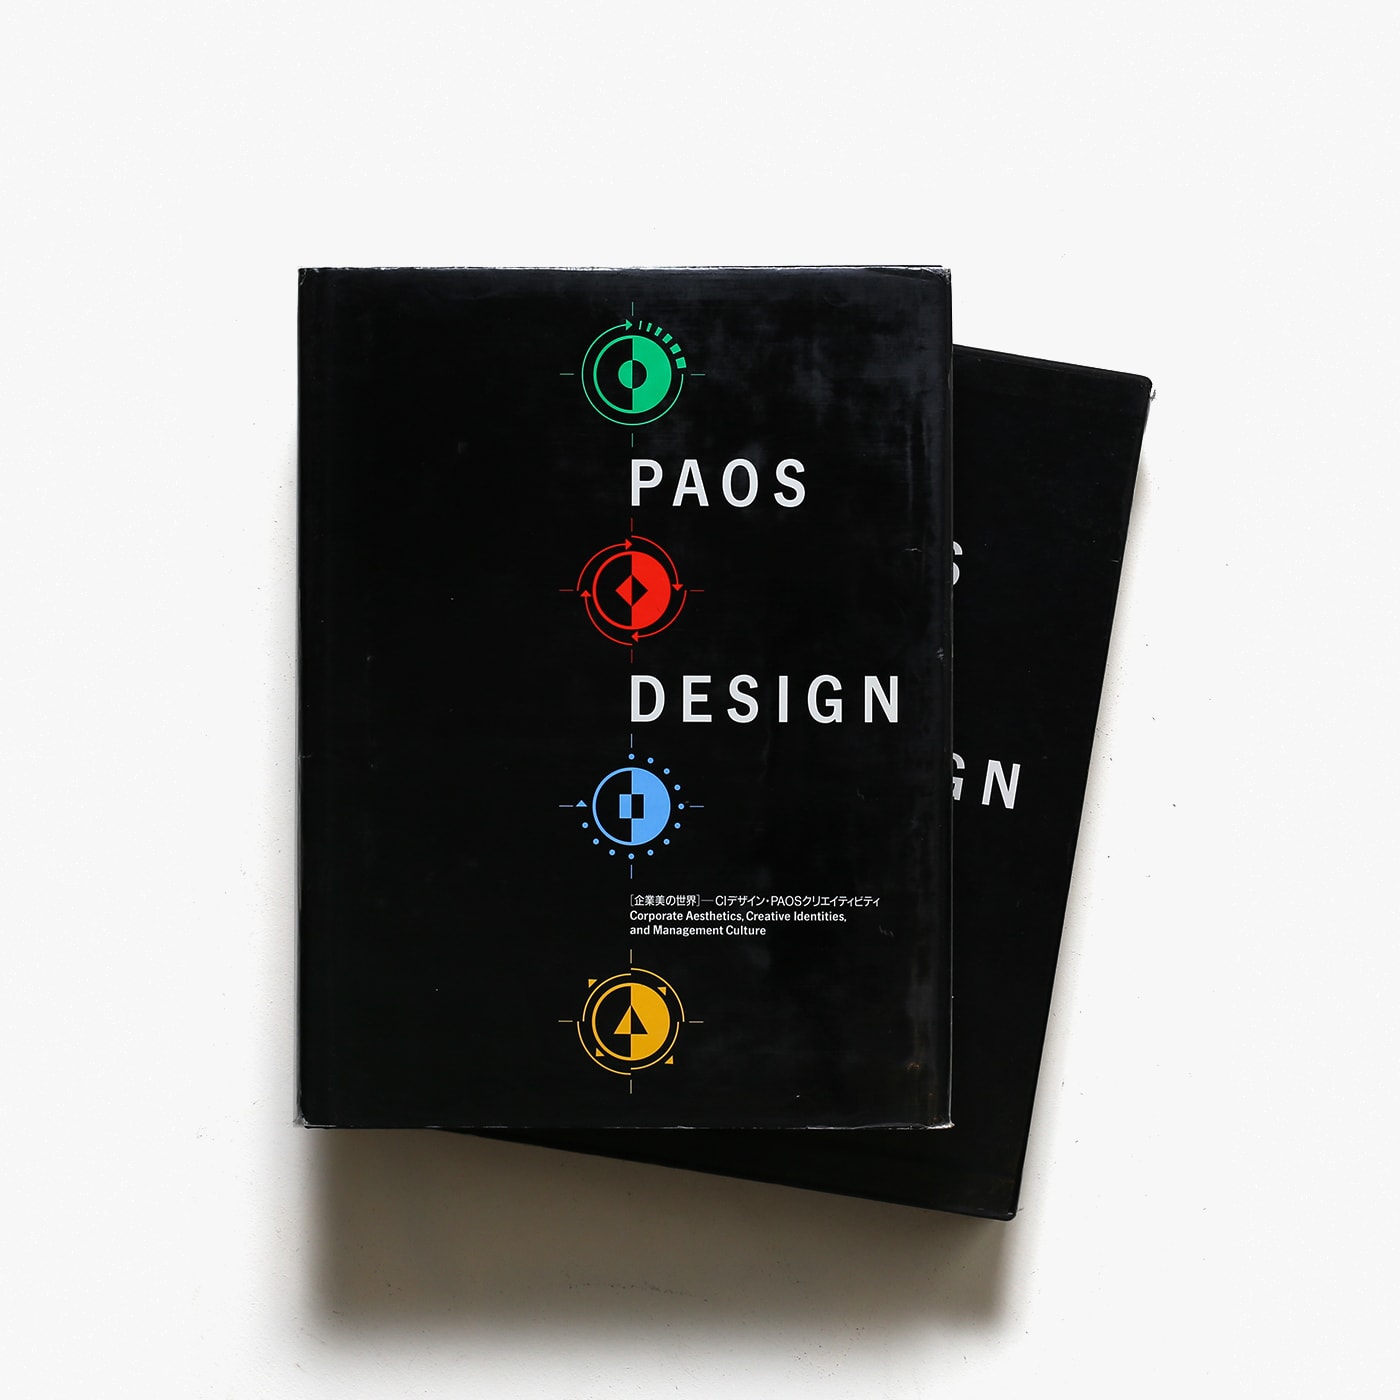 PAOSデザイン 企業美の世界